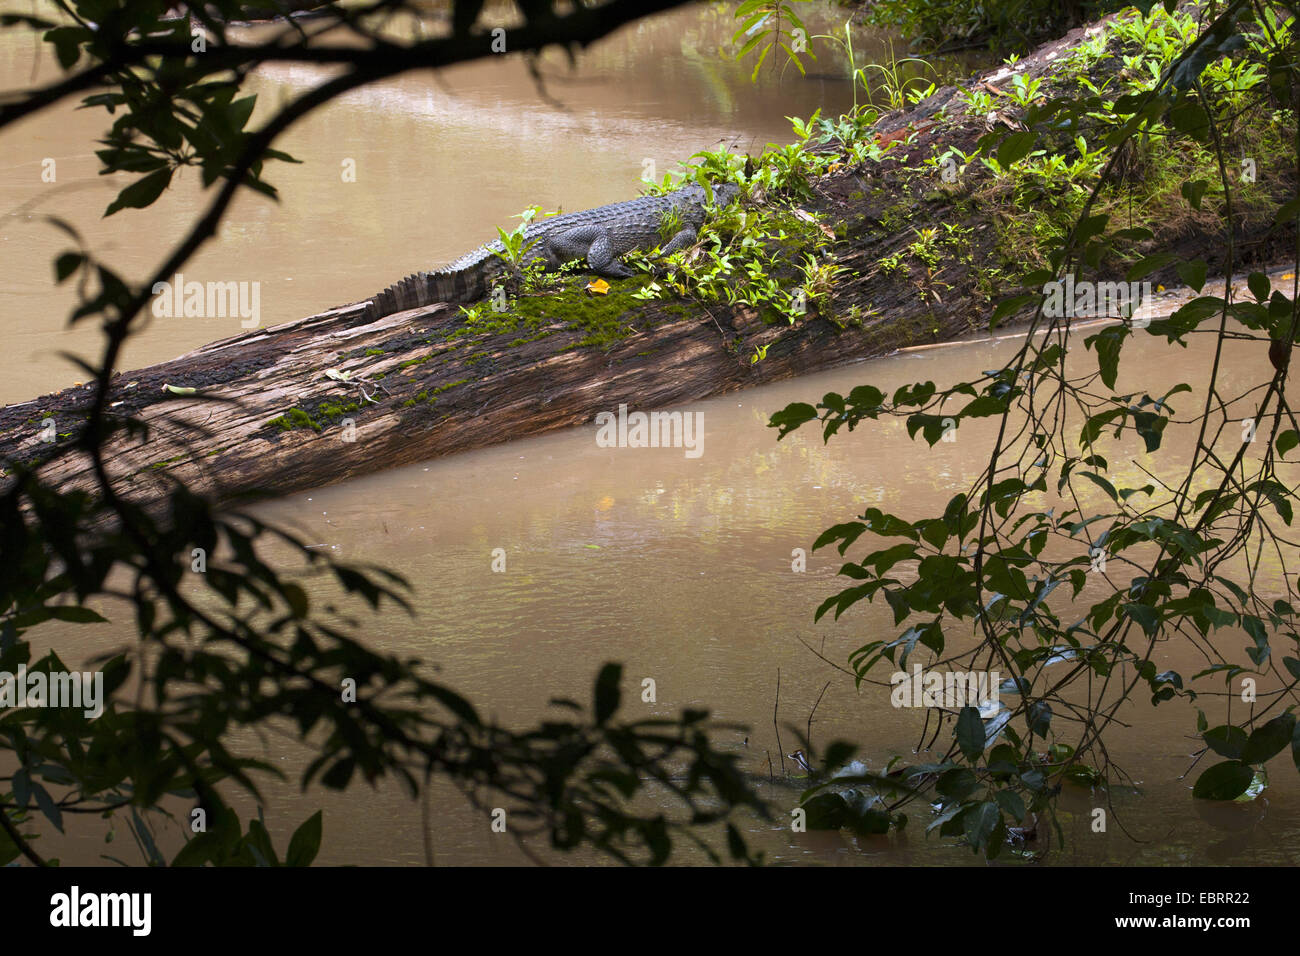 Crocodile (Crocodylus siamensis siamois), bains de soleil sur le bois mort dans une rivière, la Thaïlande, le parc national Khao Yai Banque D'Images